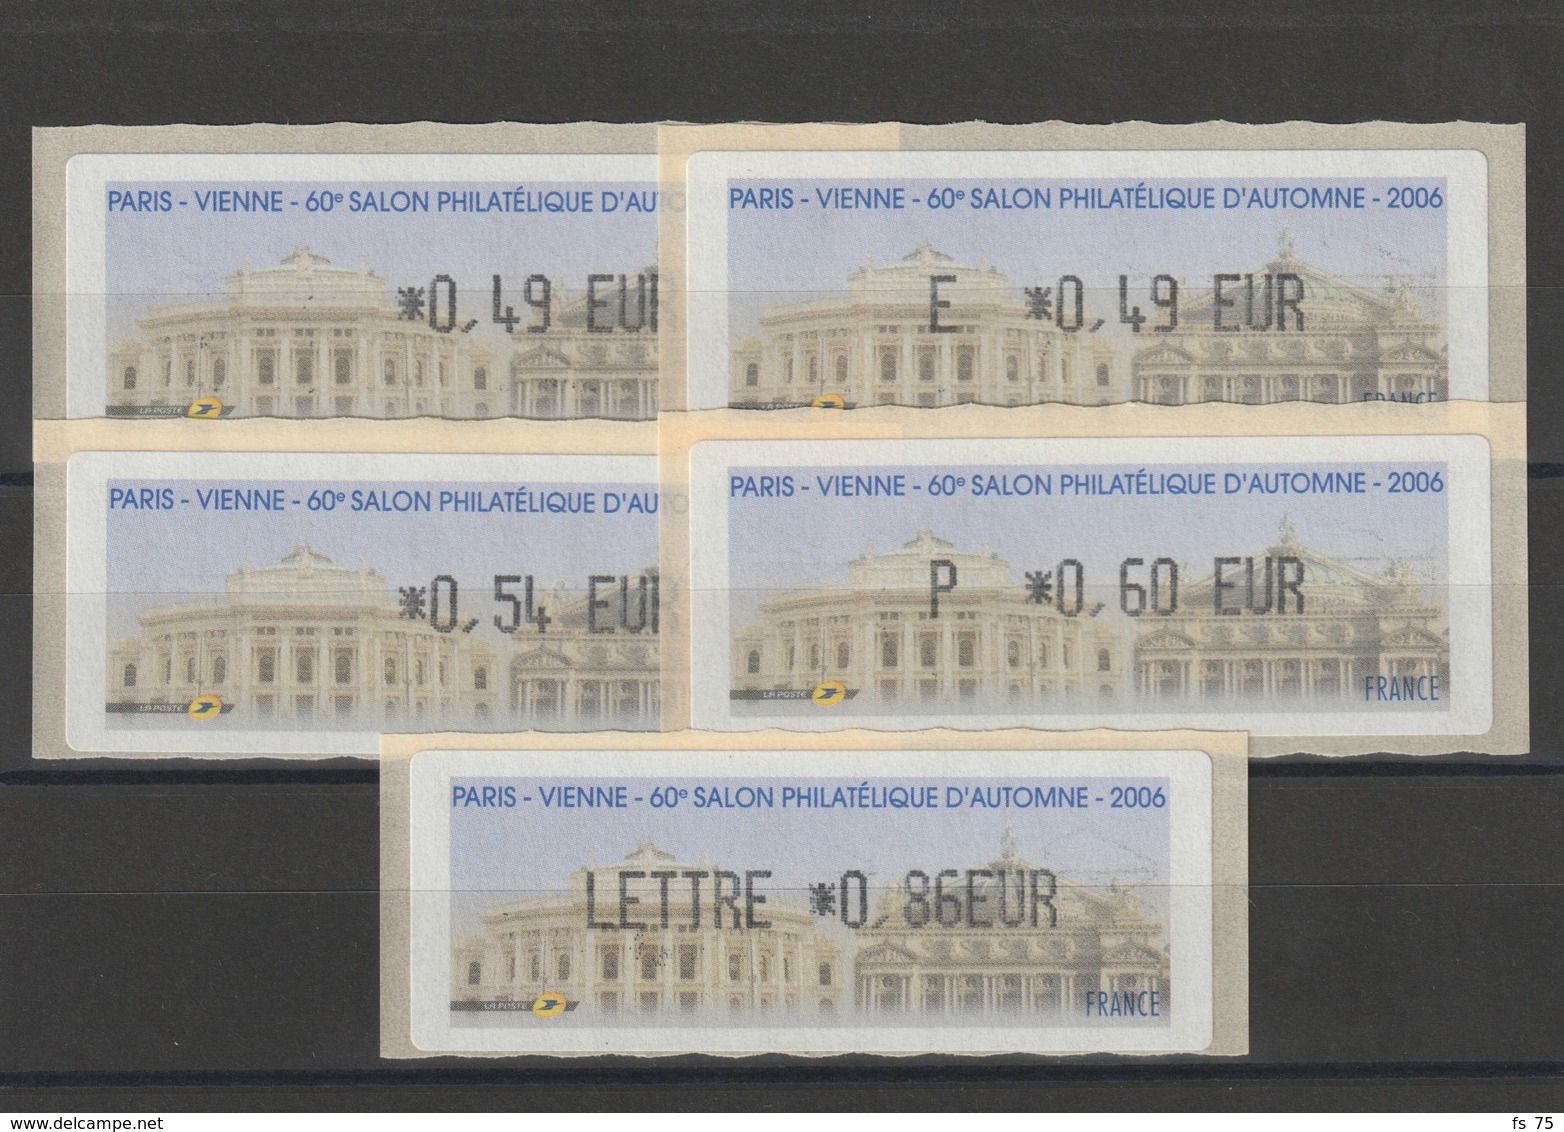 FRANCE - 5 VIGNETTES 0,49€, E. 0,49€, 0,54€, 0,60€ ET 0,86€ - PARIS - VIENNE - 60EME SALON PHILATELIQUE D'AUTOMNE 2006 - 1999-2009 Vignette Illustrate